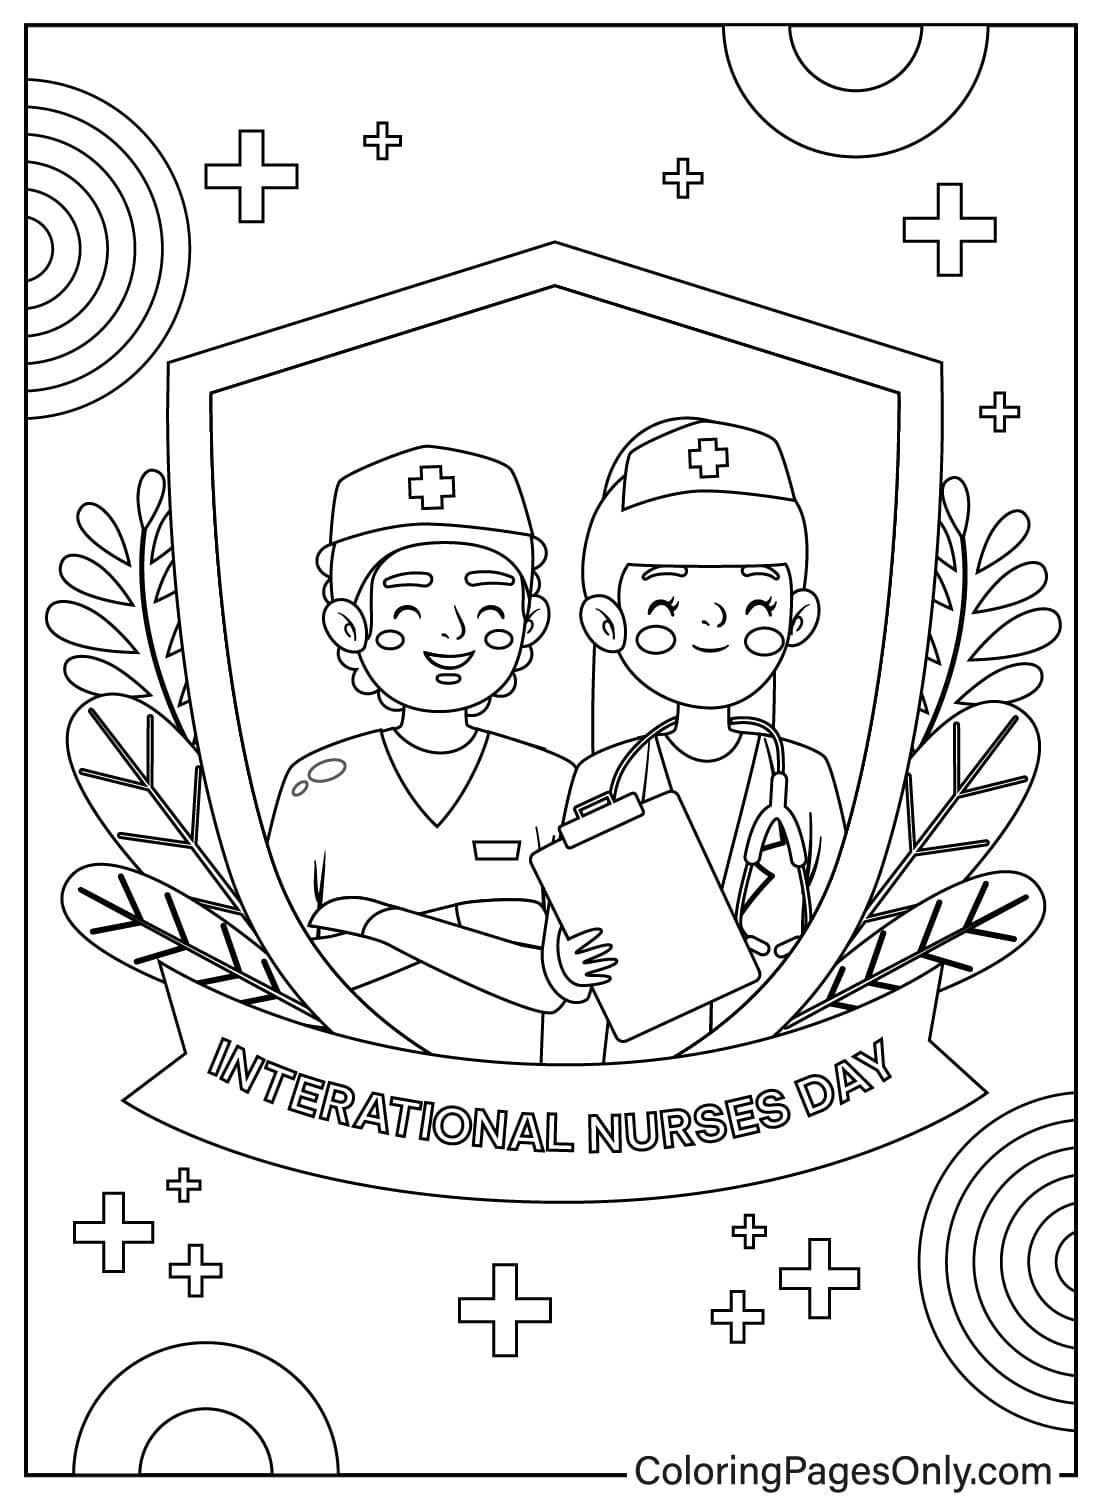 Página para colorear del Día Internacional de la Enfermera de Nurse